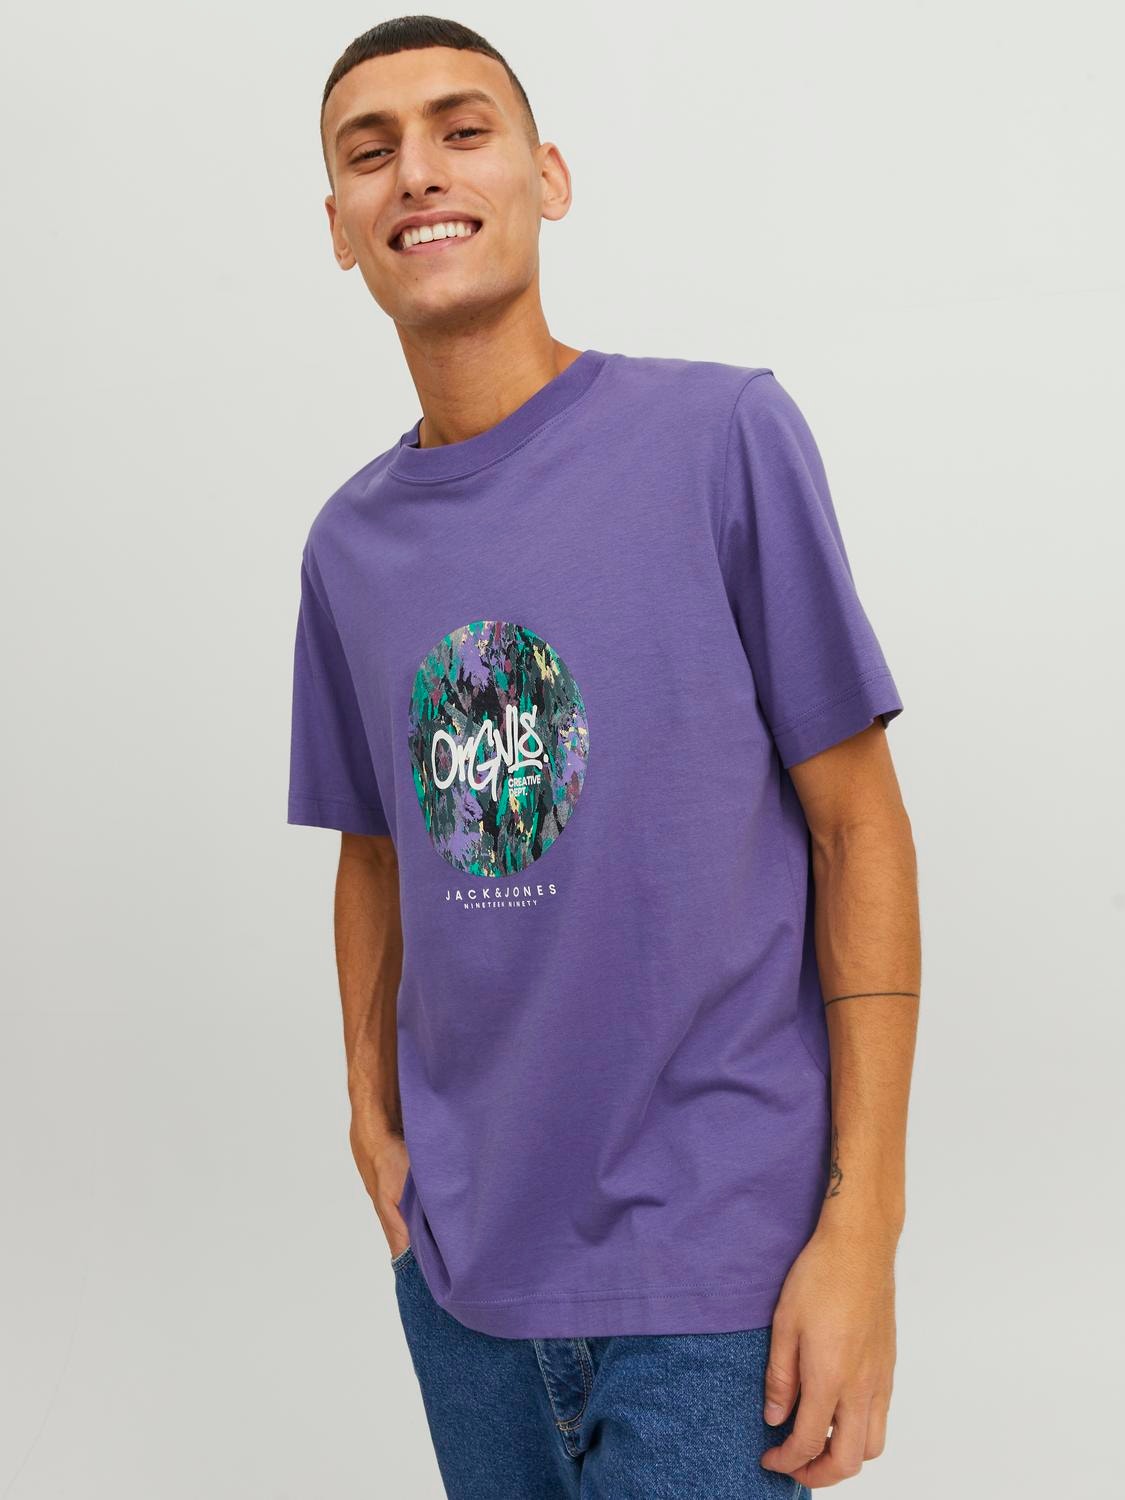 Jack & Jones Gedruckt Rundhals T-shirt -Twilight Purple - 12240120